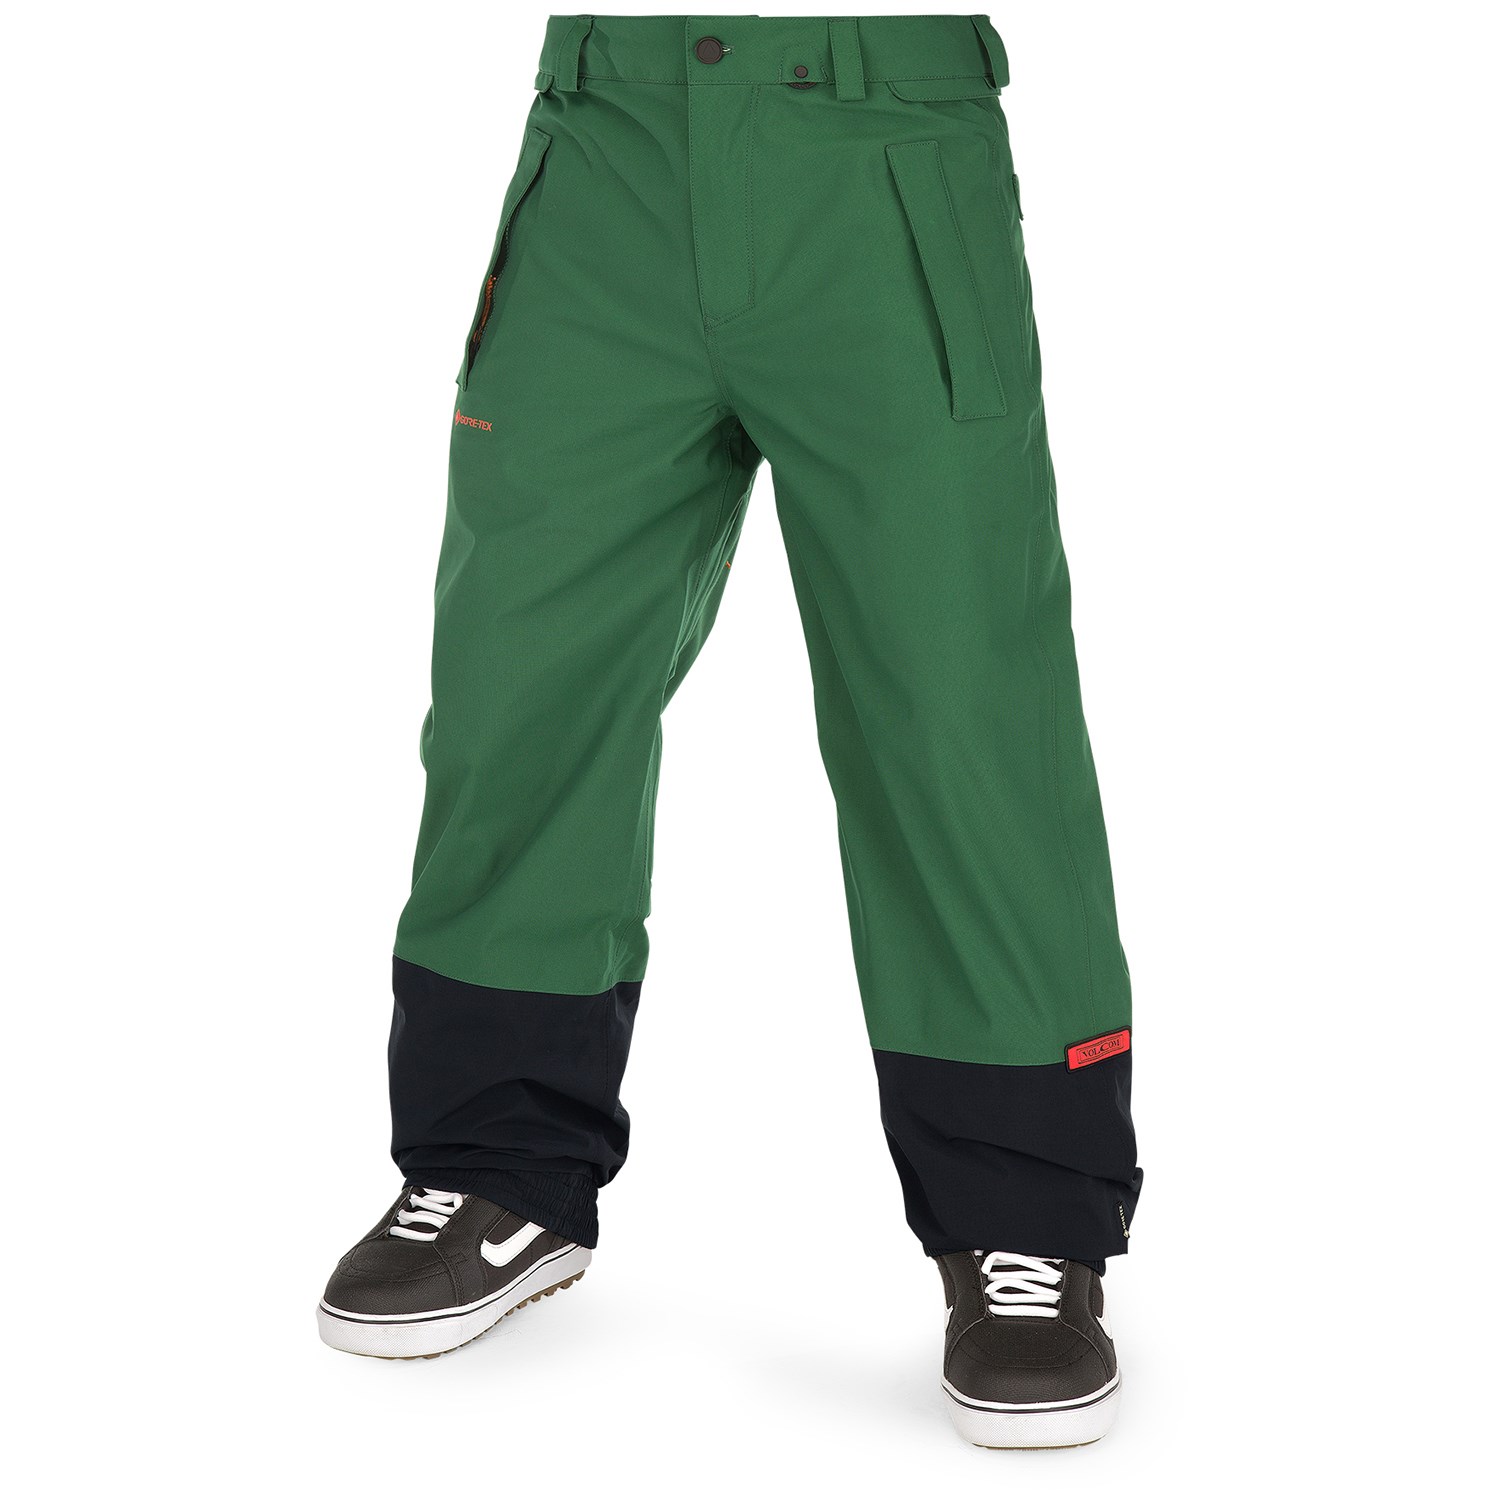 DSG Men's Tricot Pants